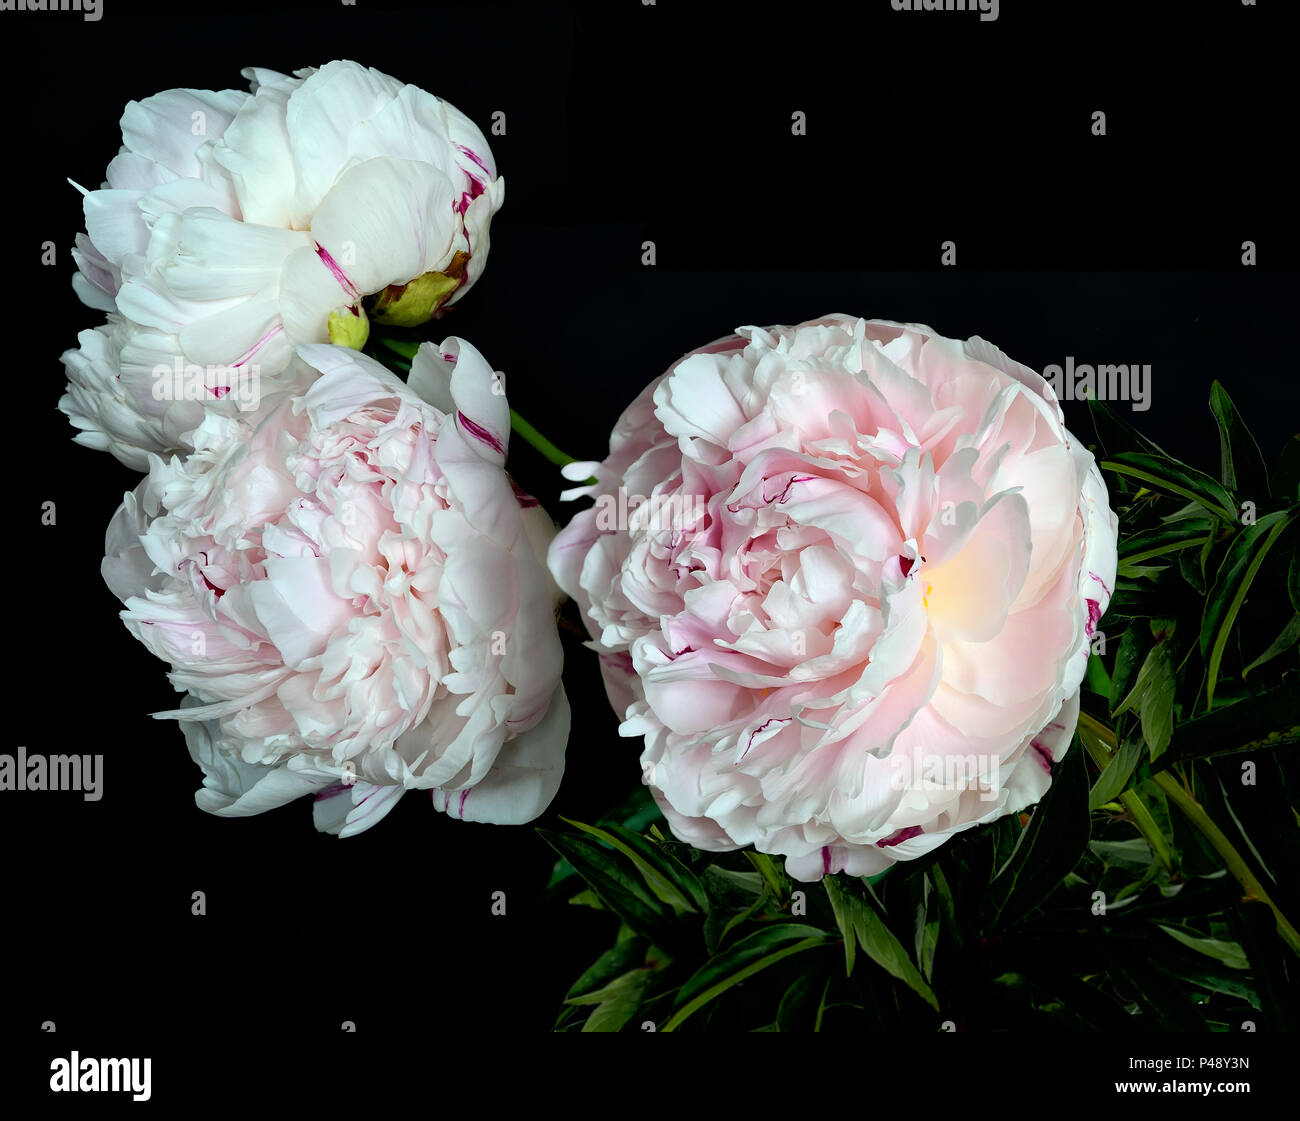 Schönen Blumenstrauß von sanften weiß-rosa Pfingstrosen in der Nähe auf einem schwarzen Hintergrund mit Platz für Text isoliert. Blumen mit zarten Blüten und zarten Stockfoto